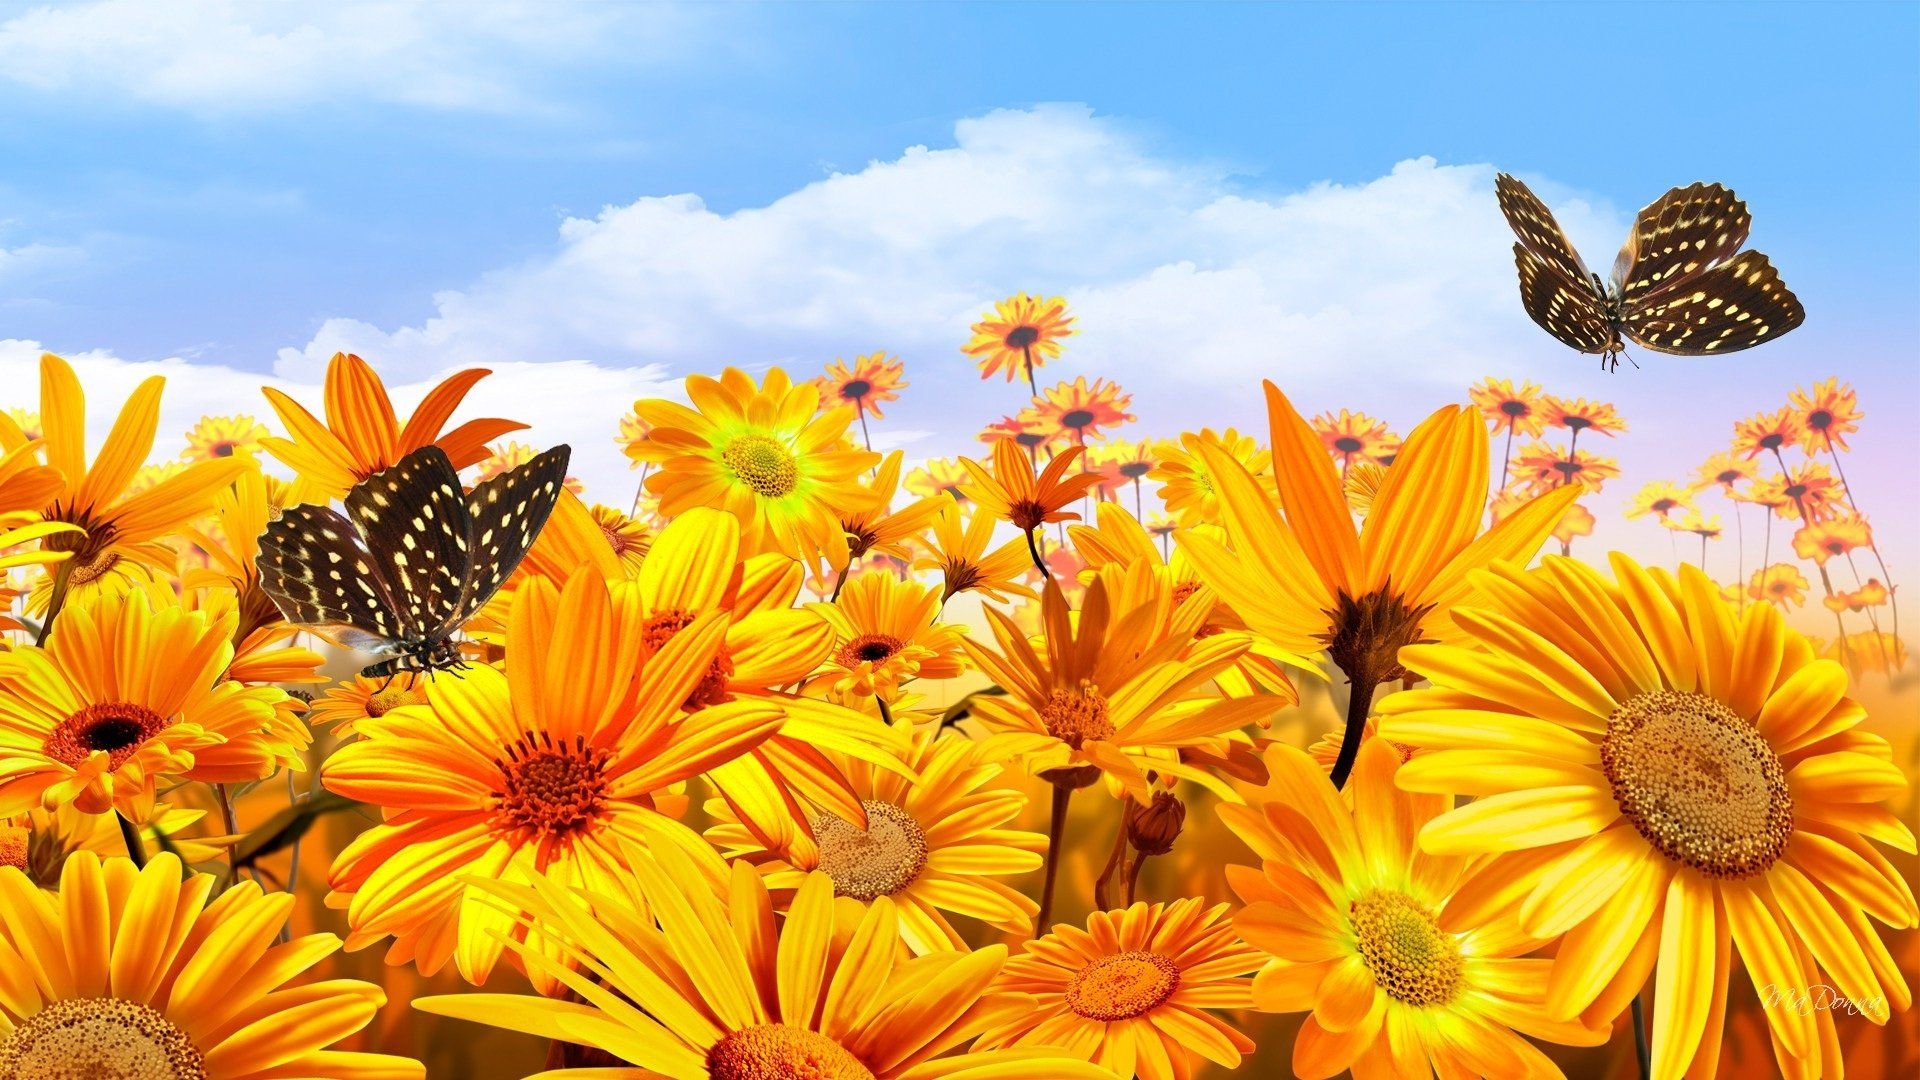 Sunflowers and Butterflies Wallpaper